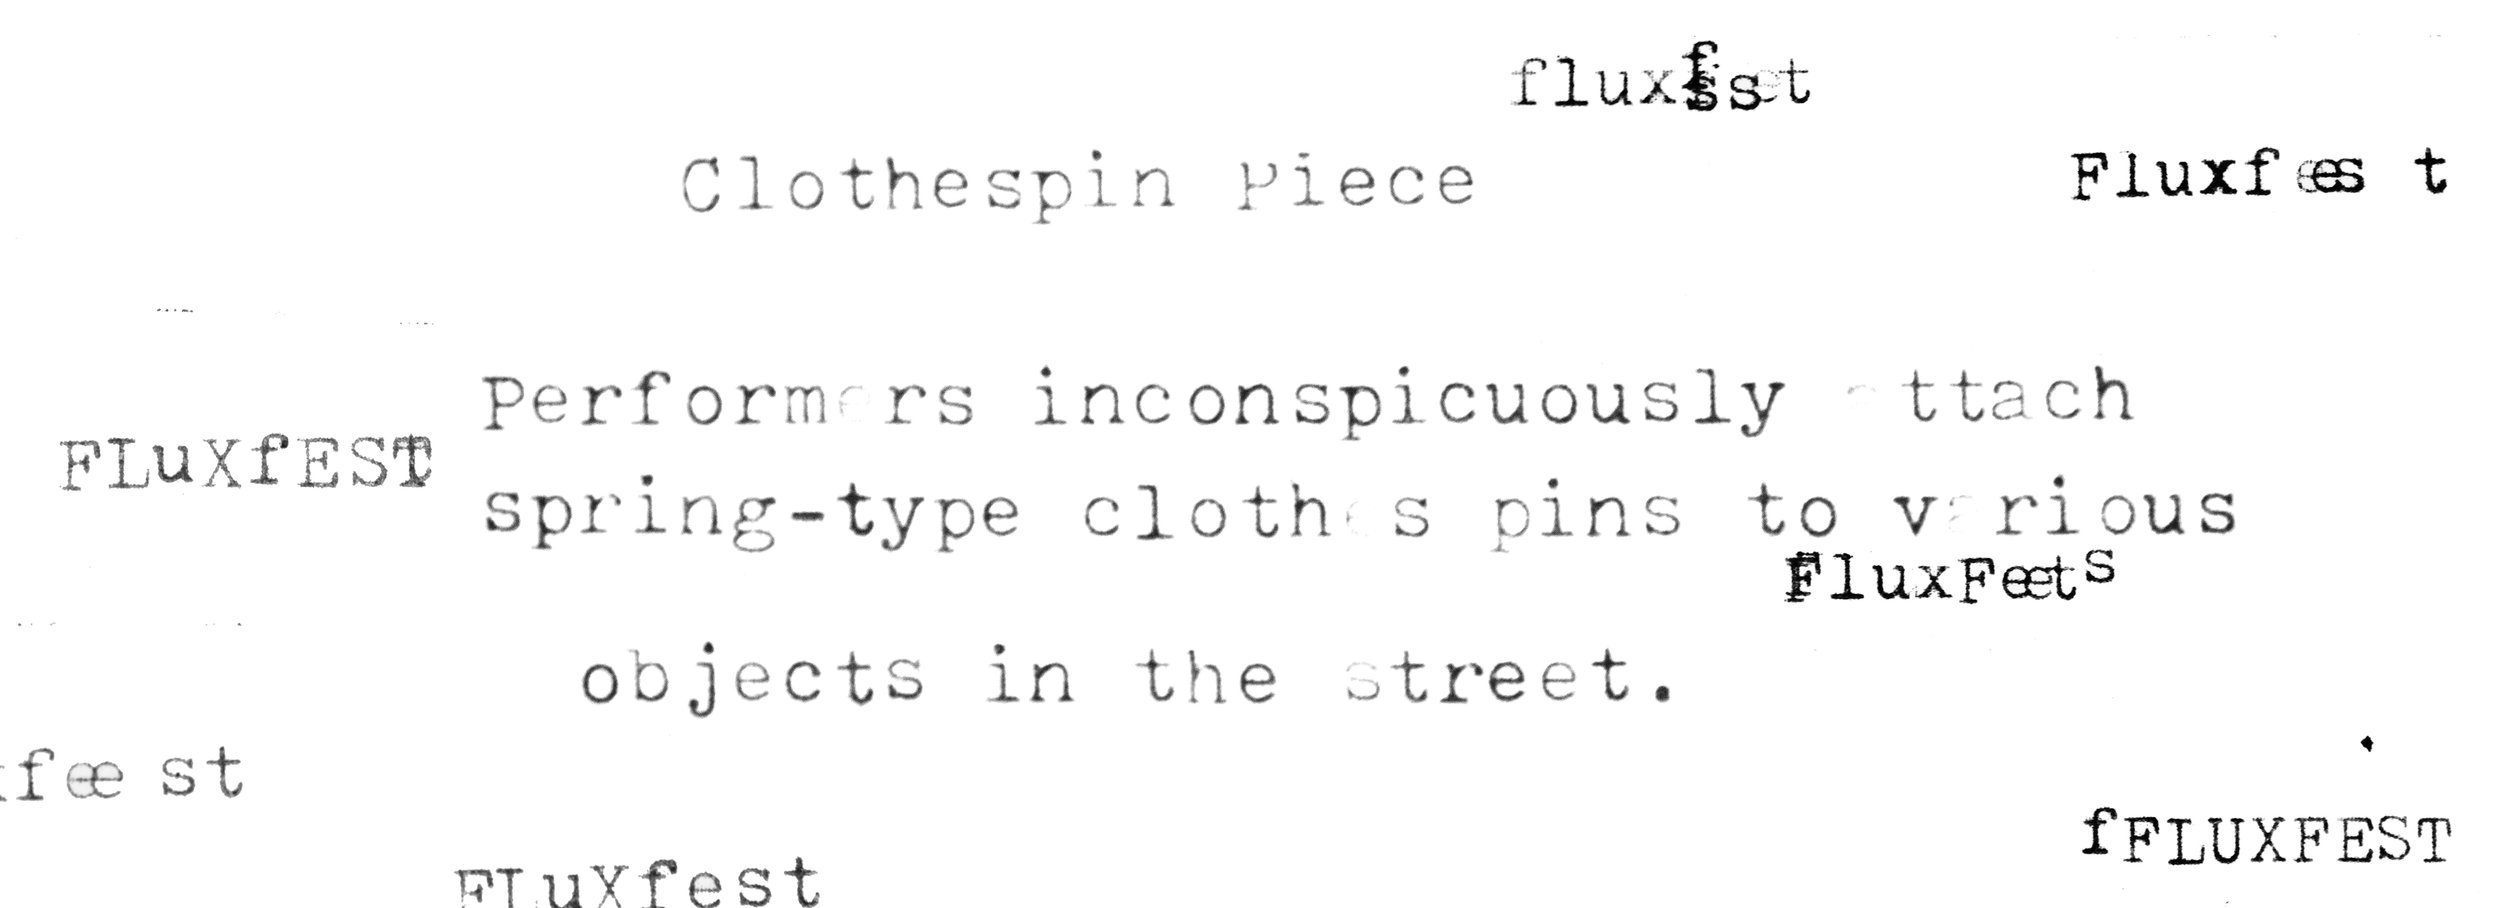 fluxpieces_clothes.jpg